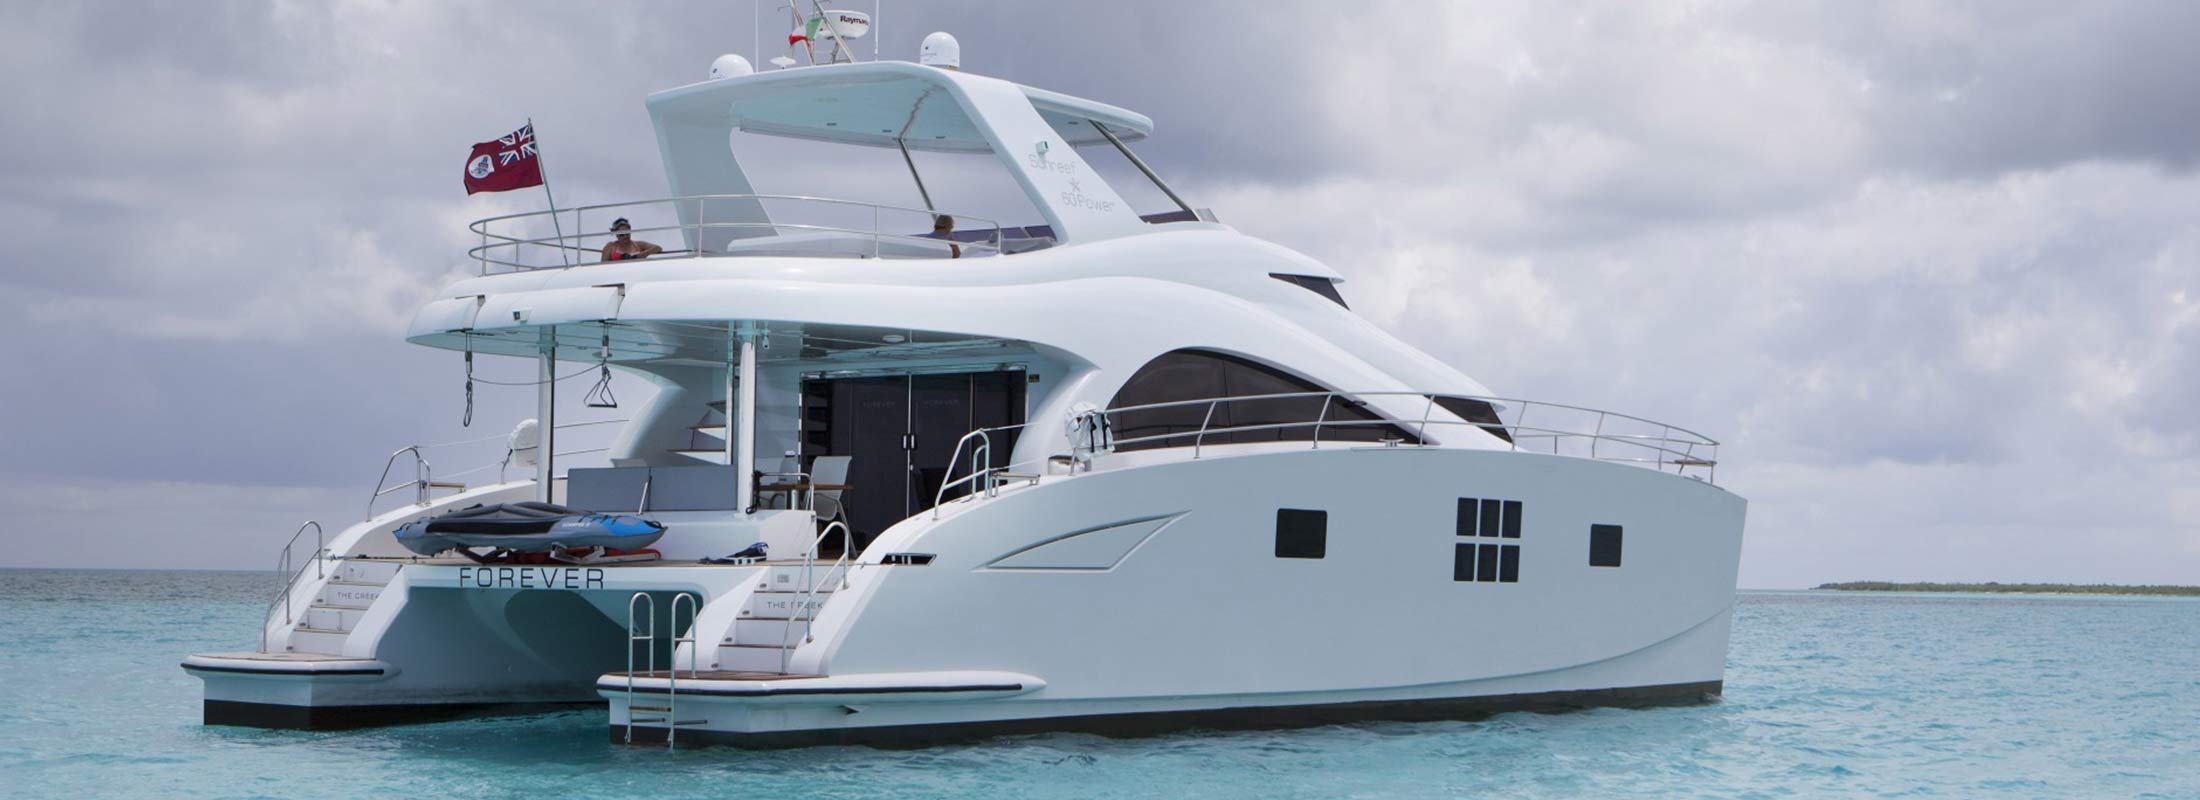 Forever Motor Yacht for Charter Miami Alaska Florida slider 2